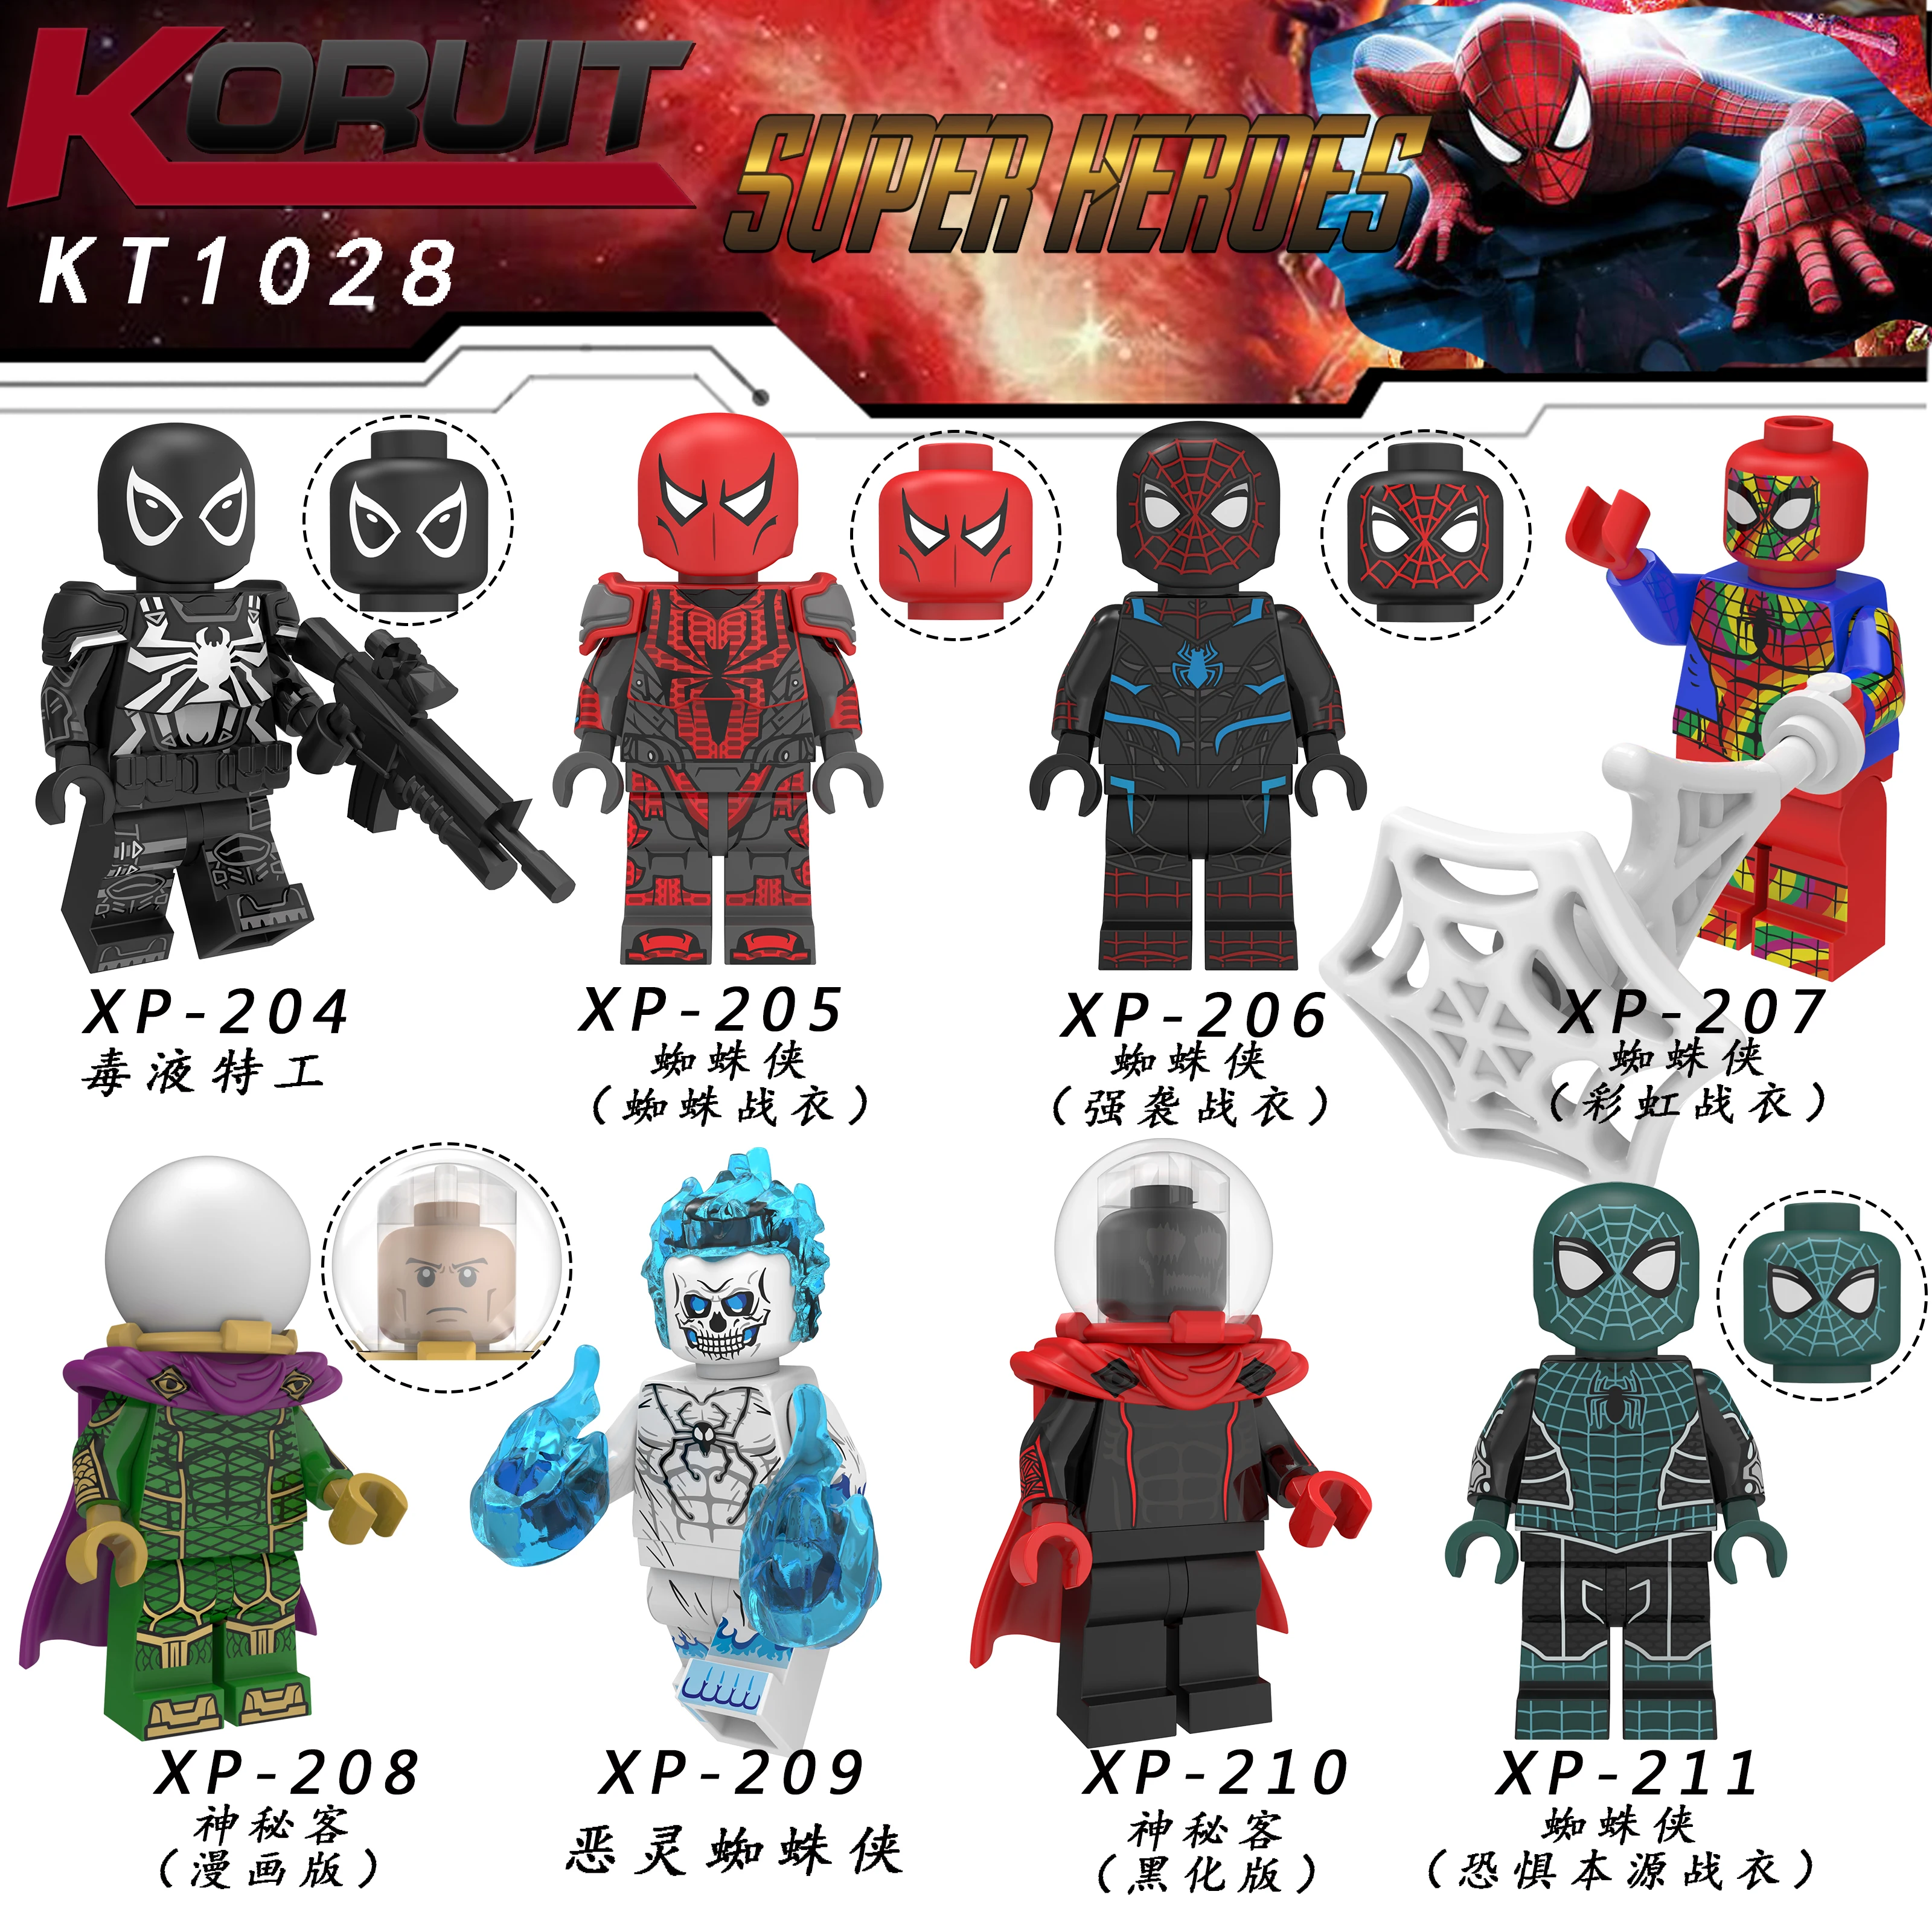 Человек-паук вдали от дома фигурка супергероя Mysterio Человек-паук cacodemon строительные блоки кирпичи игрушки для детей kt1028